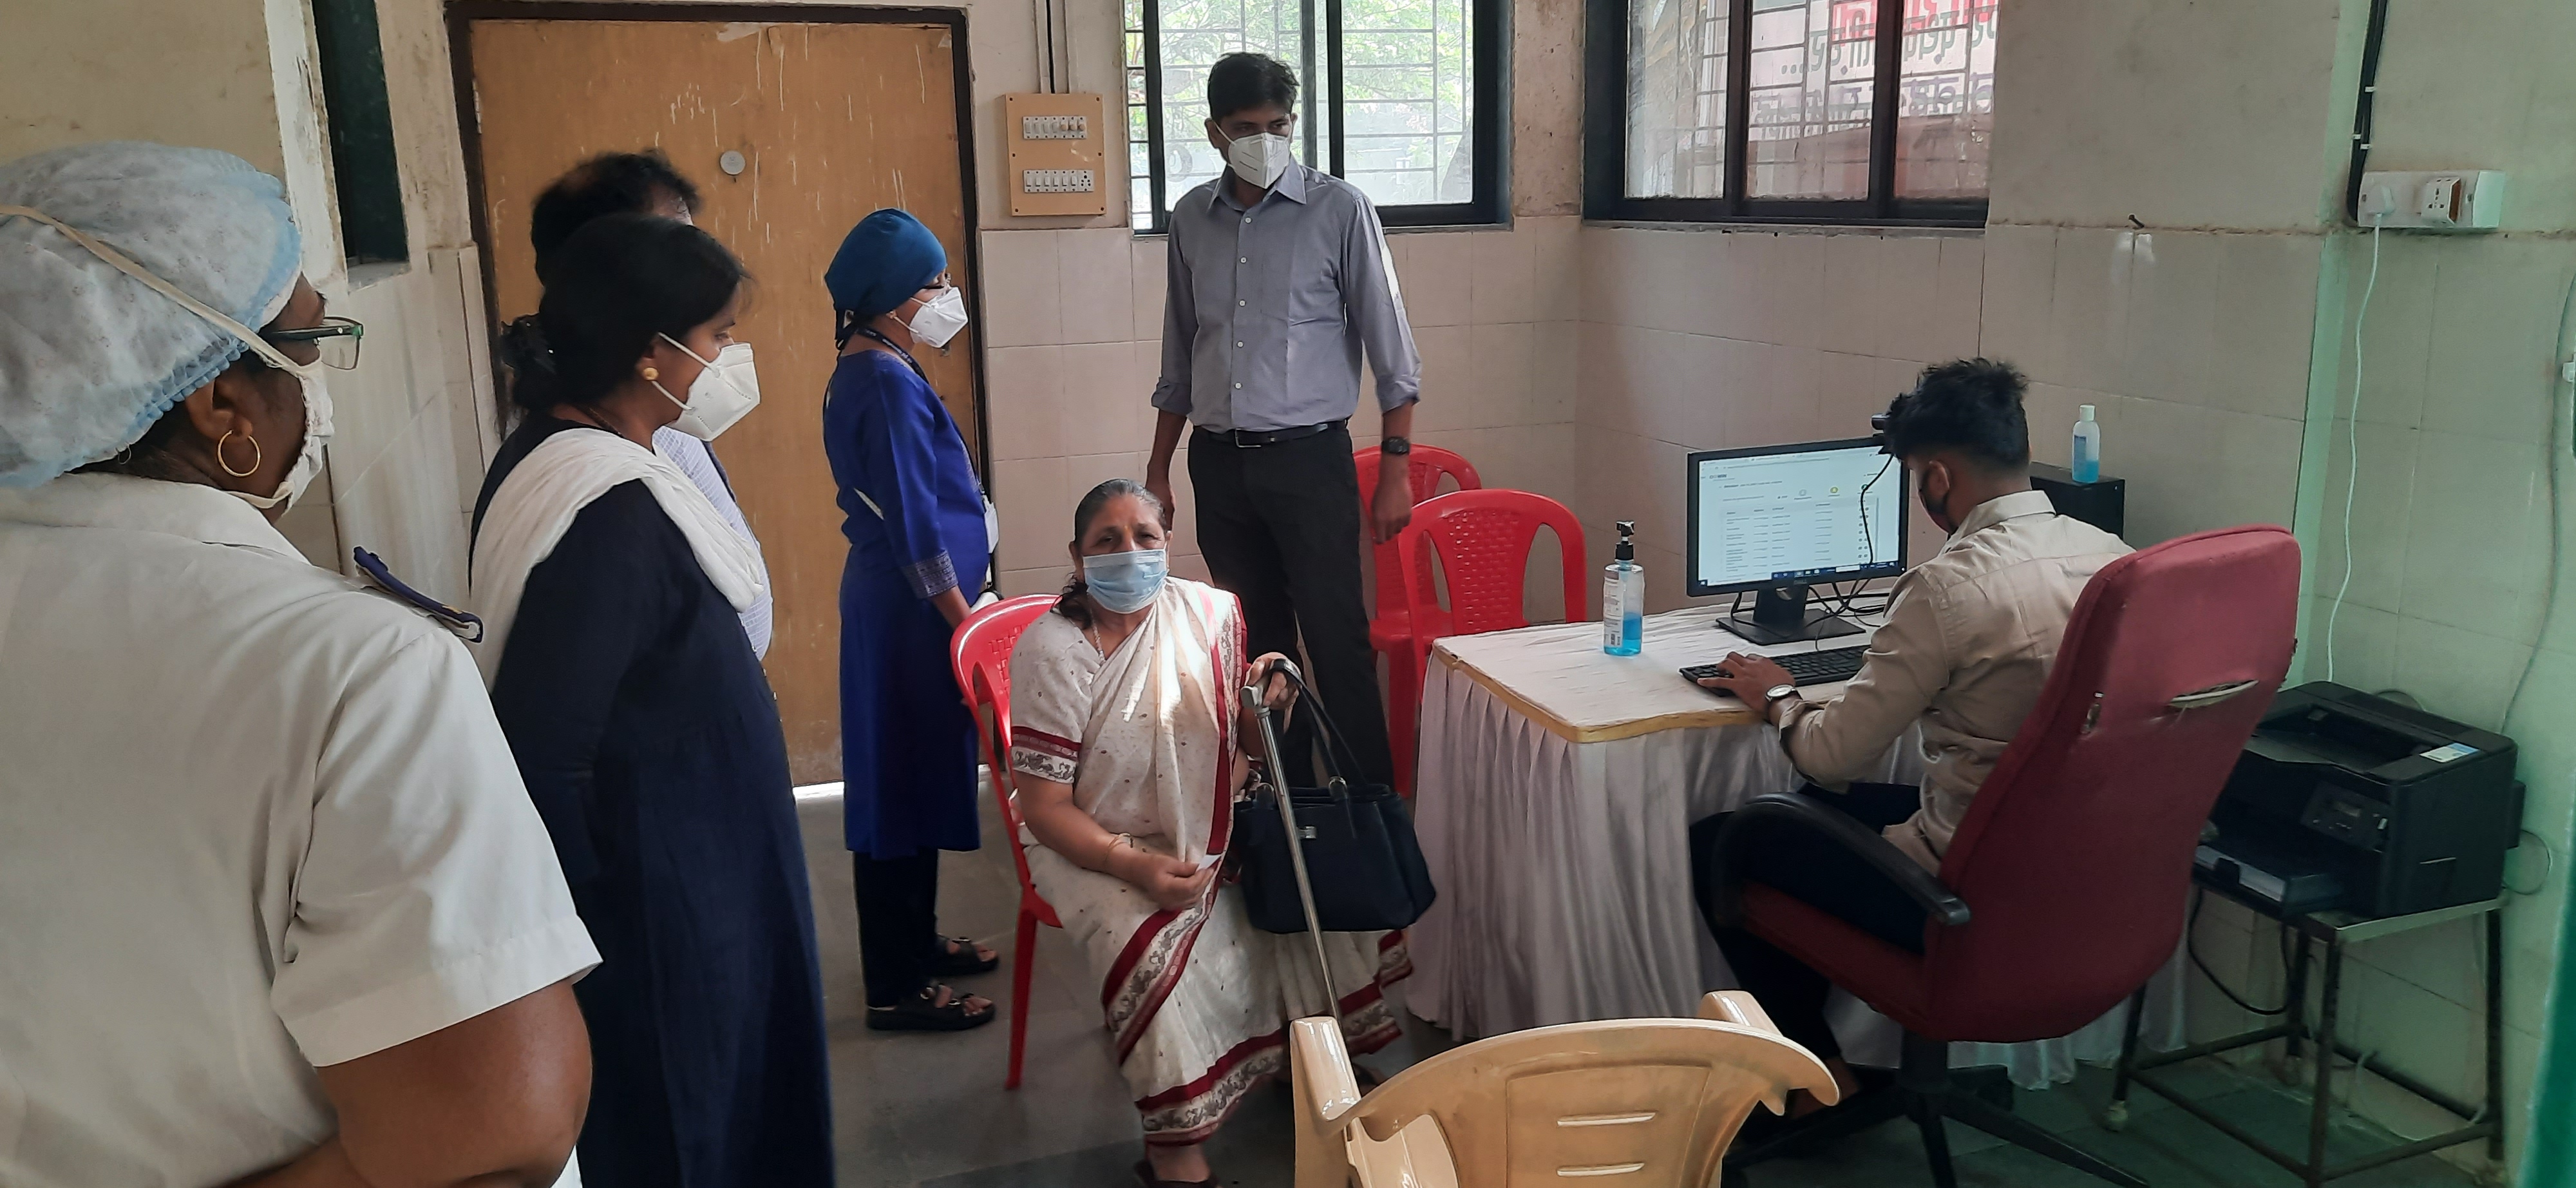 01 Comissioner visit vaccination center in Belapur